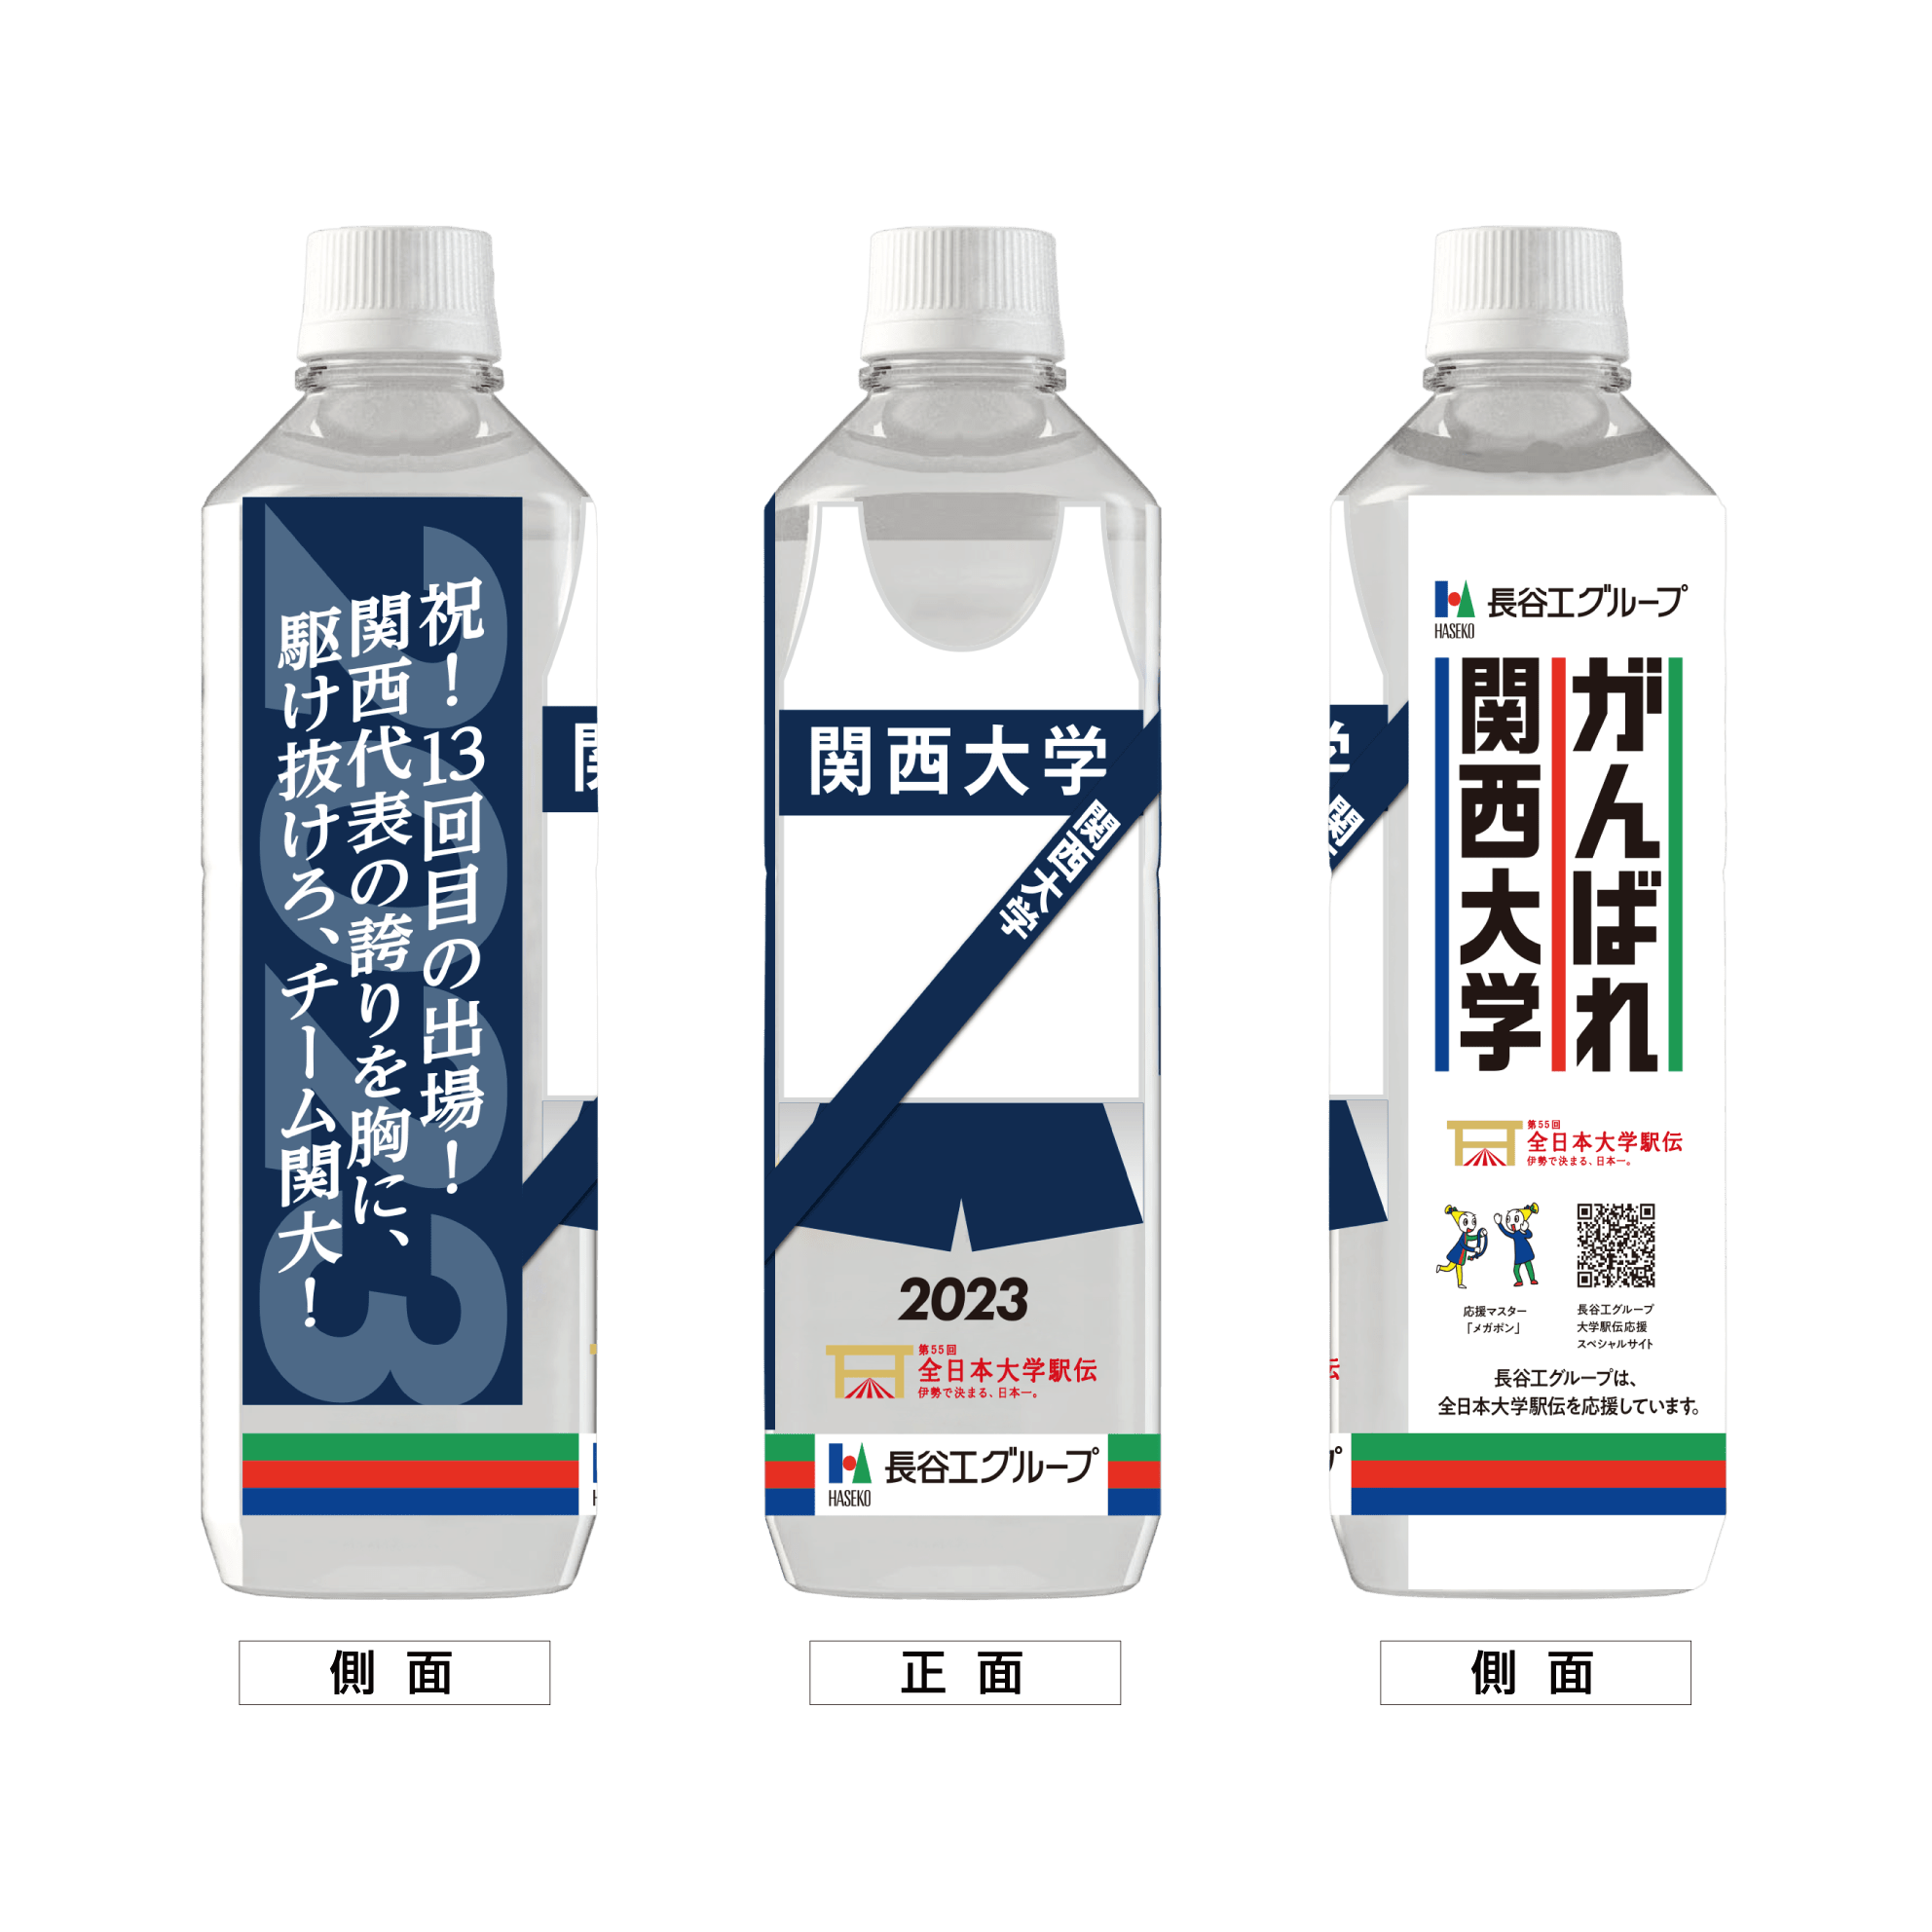 関西大学 ボトルデザイン